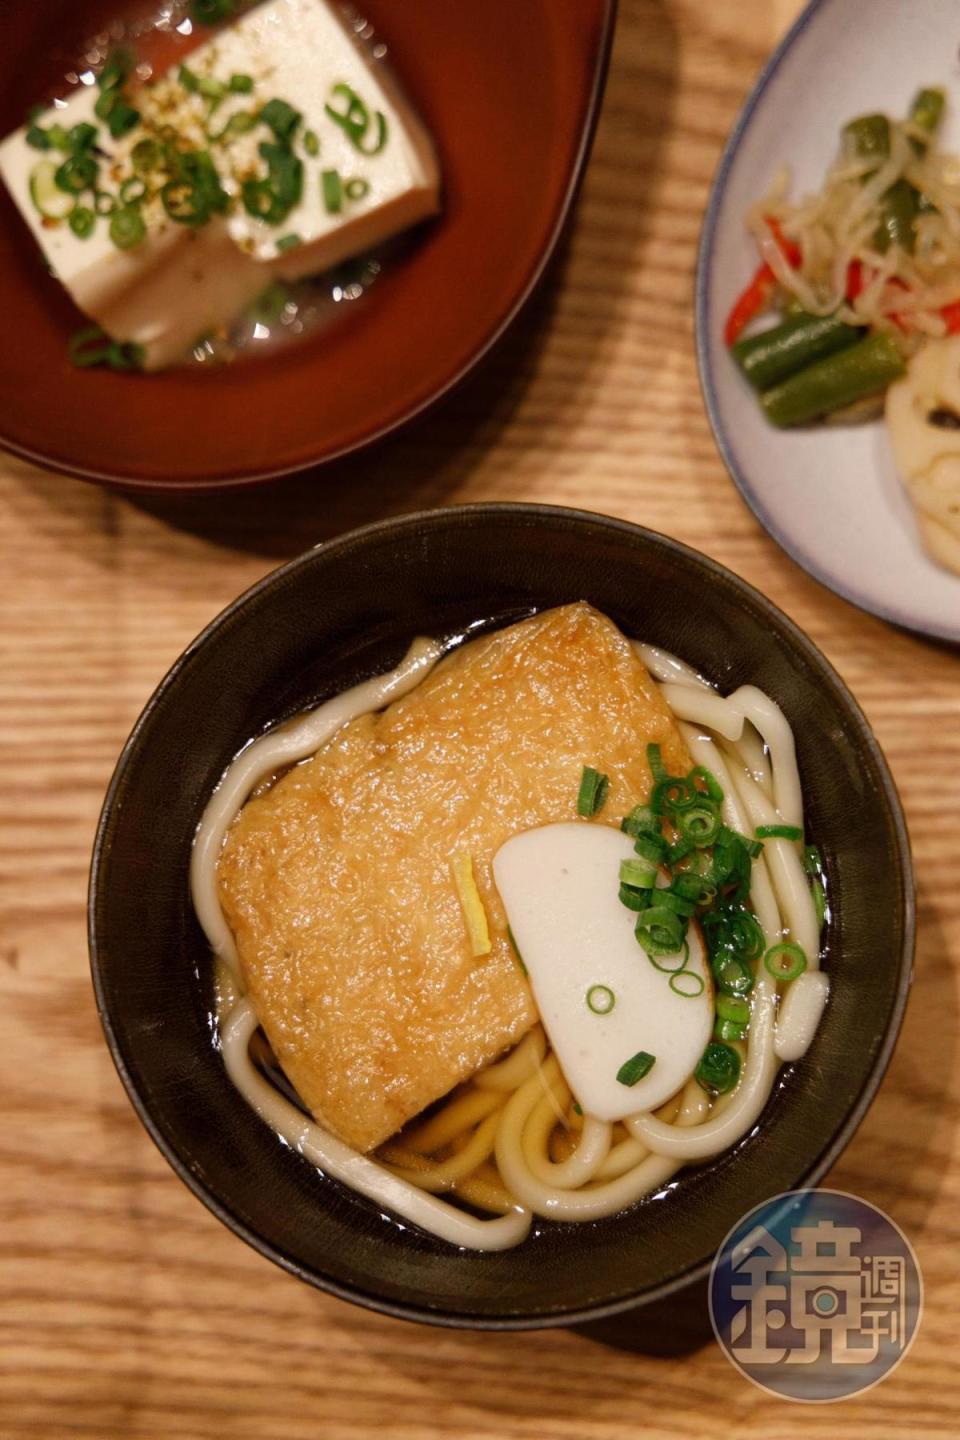 在自助早餐能品嘗到湯汁鮮美的烏龍麵等大阪著名料理。